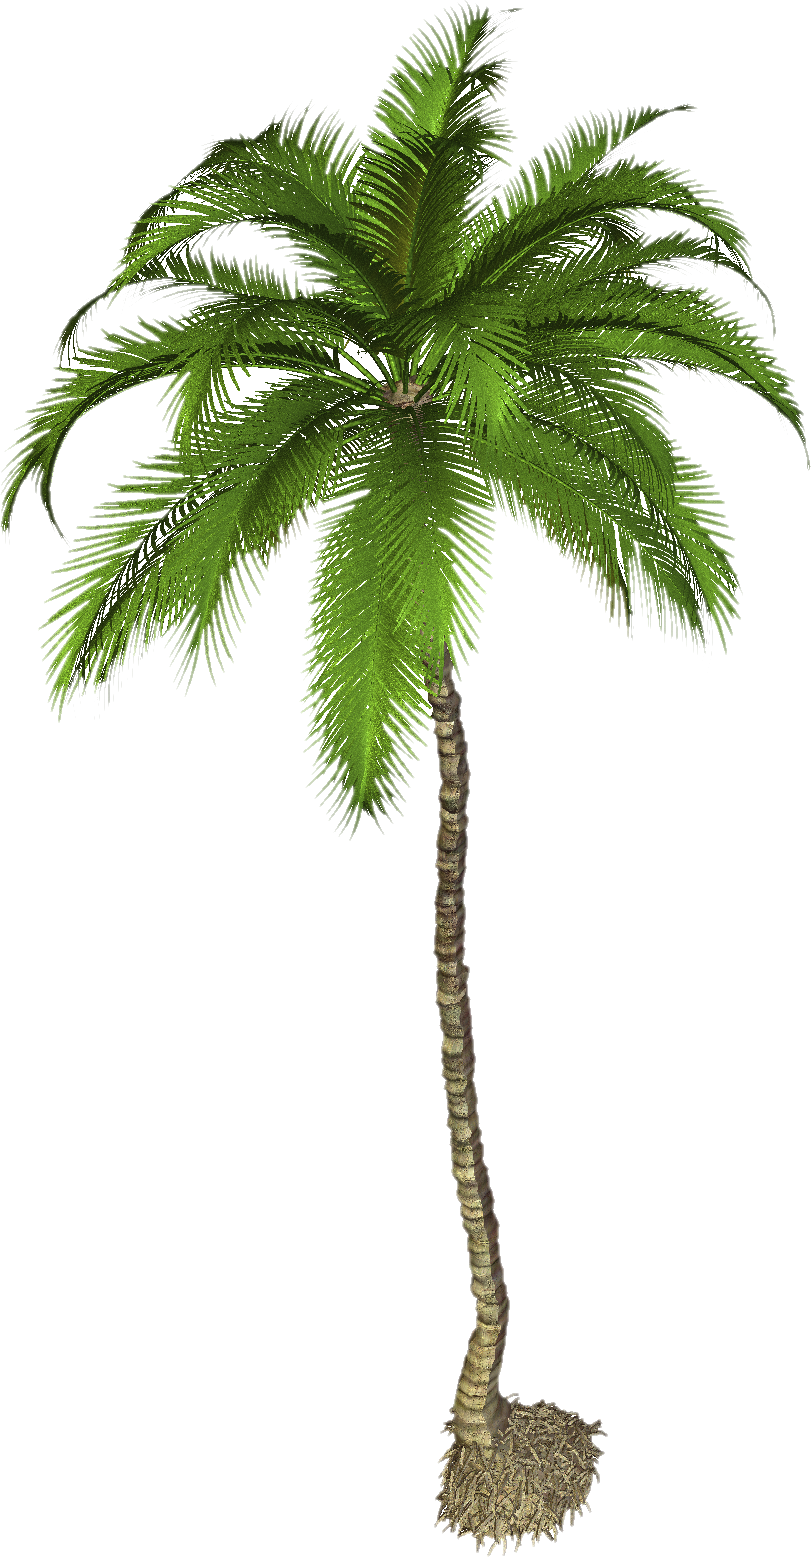 Drzewo palmowe